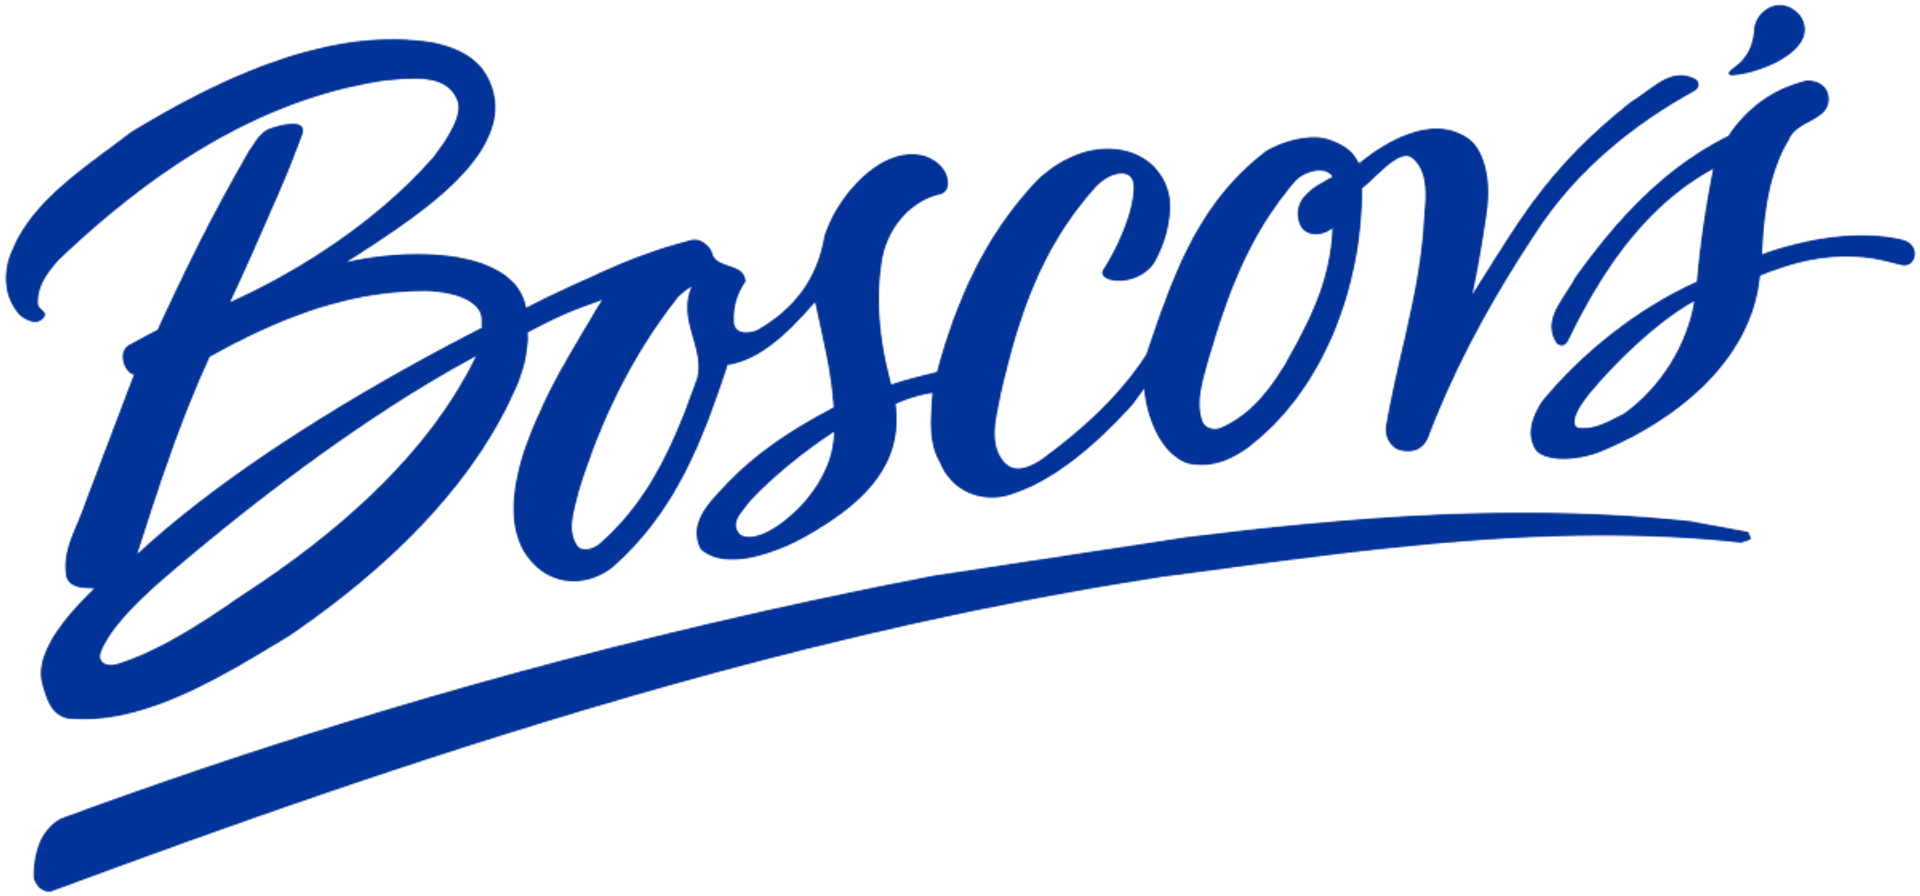 BOSCOV'S logo. Current weekly ad